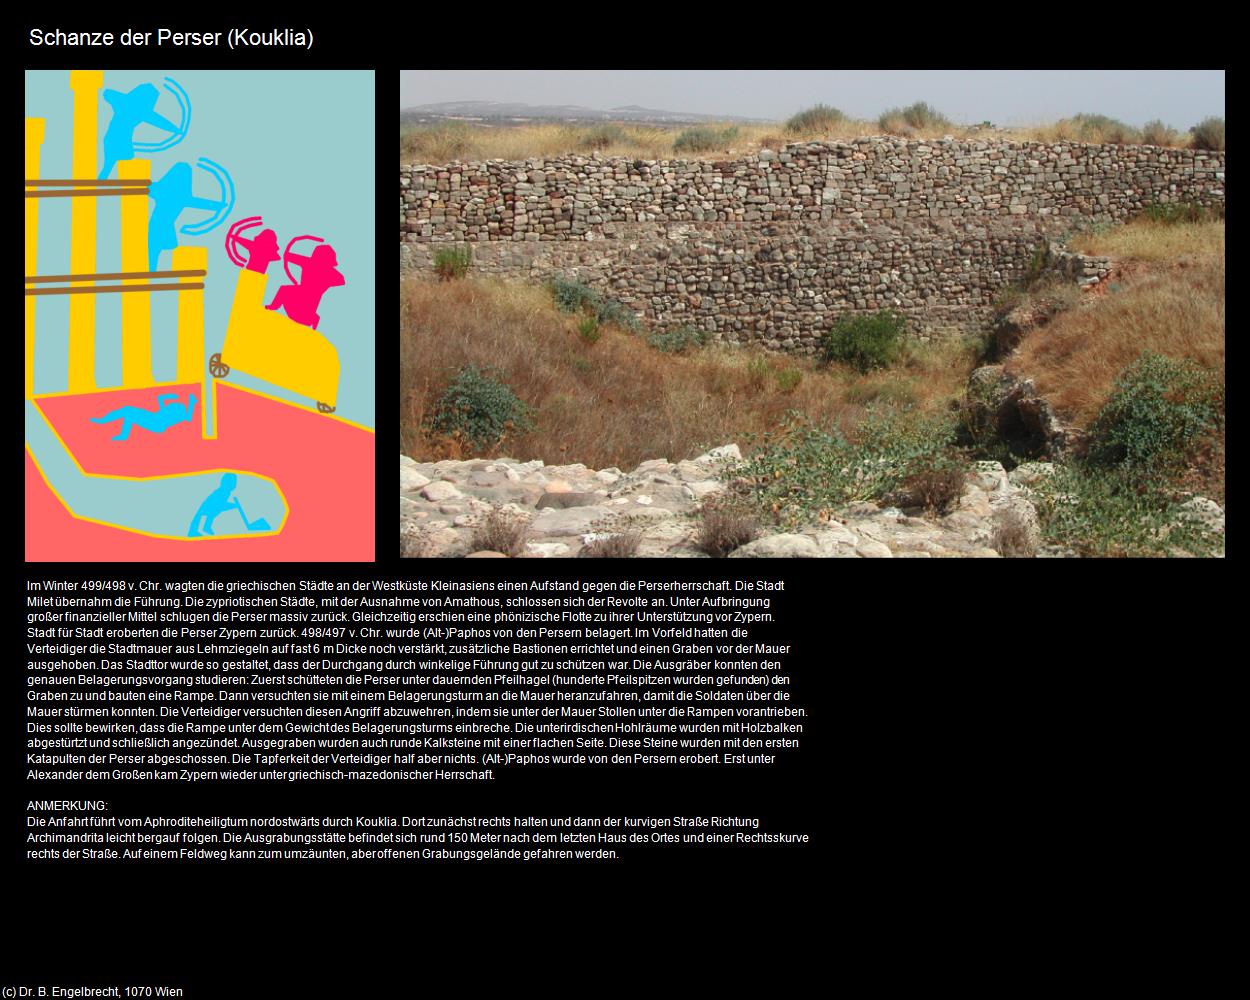 Schanze der Perser  (Kouklia) in ZYPERN-Insel der Aphrodite